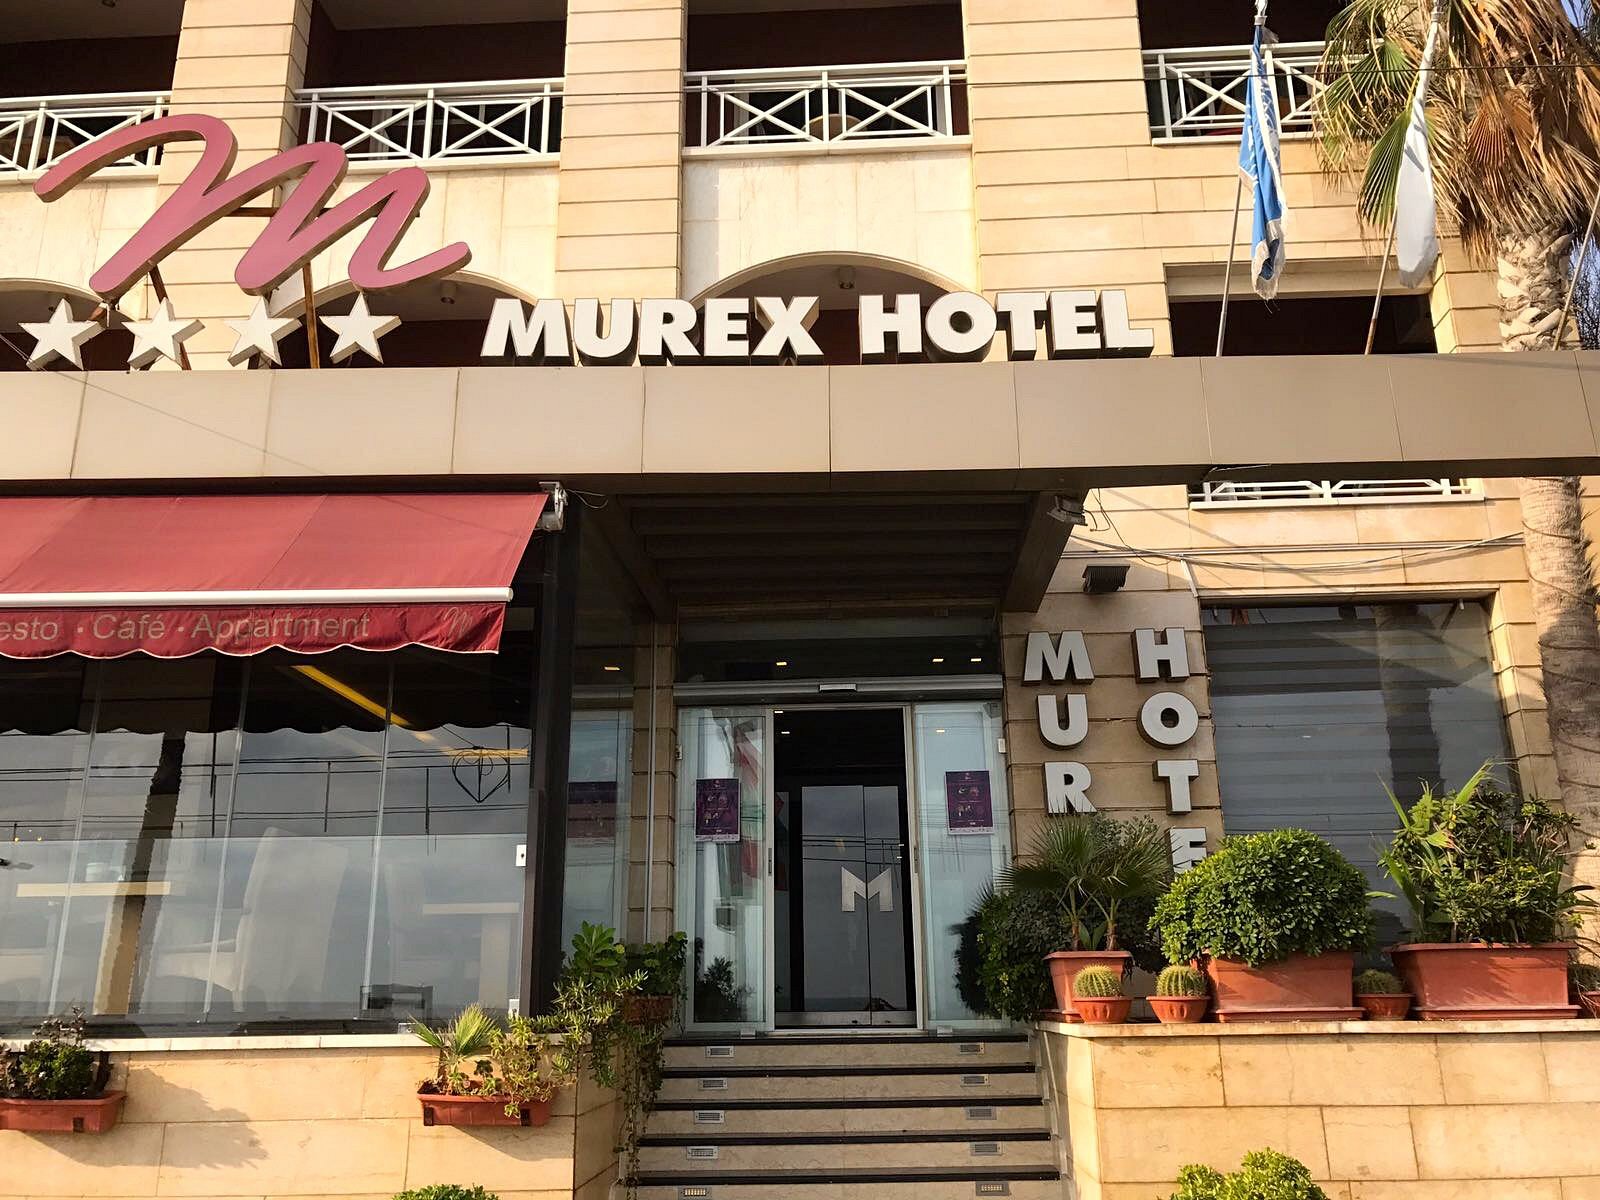 Murex Hotel image